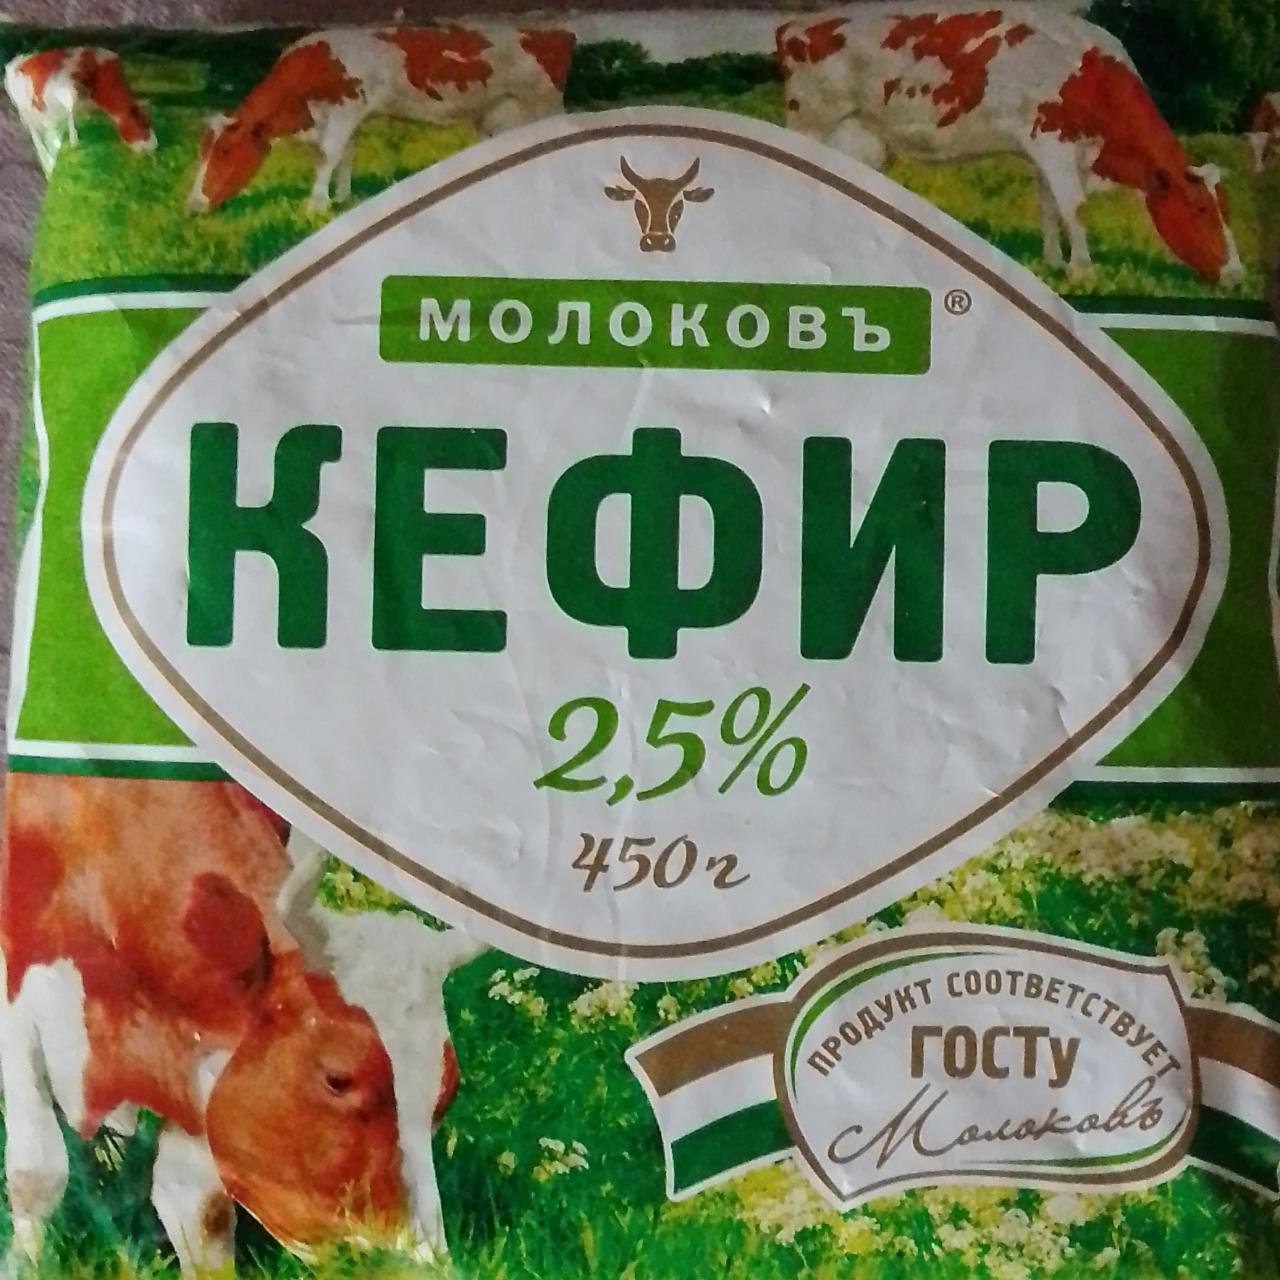 Фото - Кефир 2.5% Молоковъ